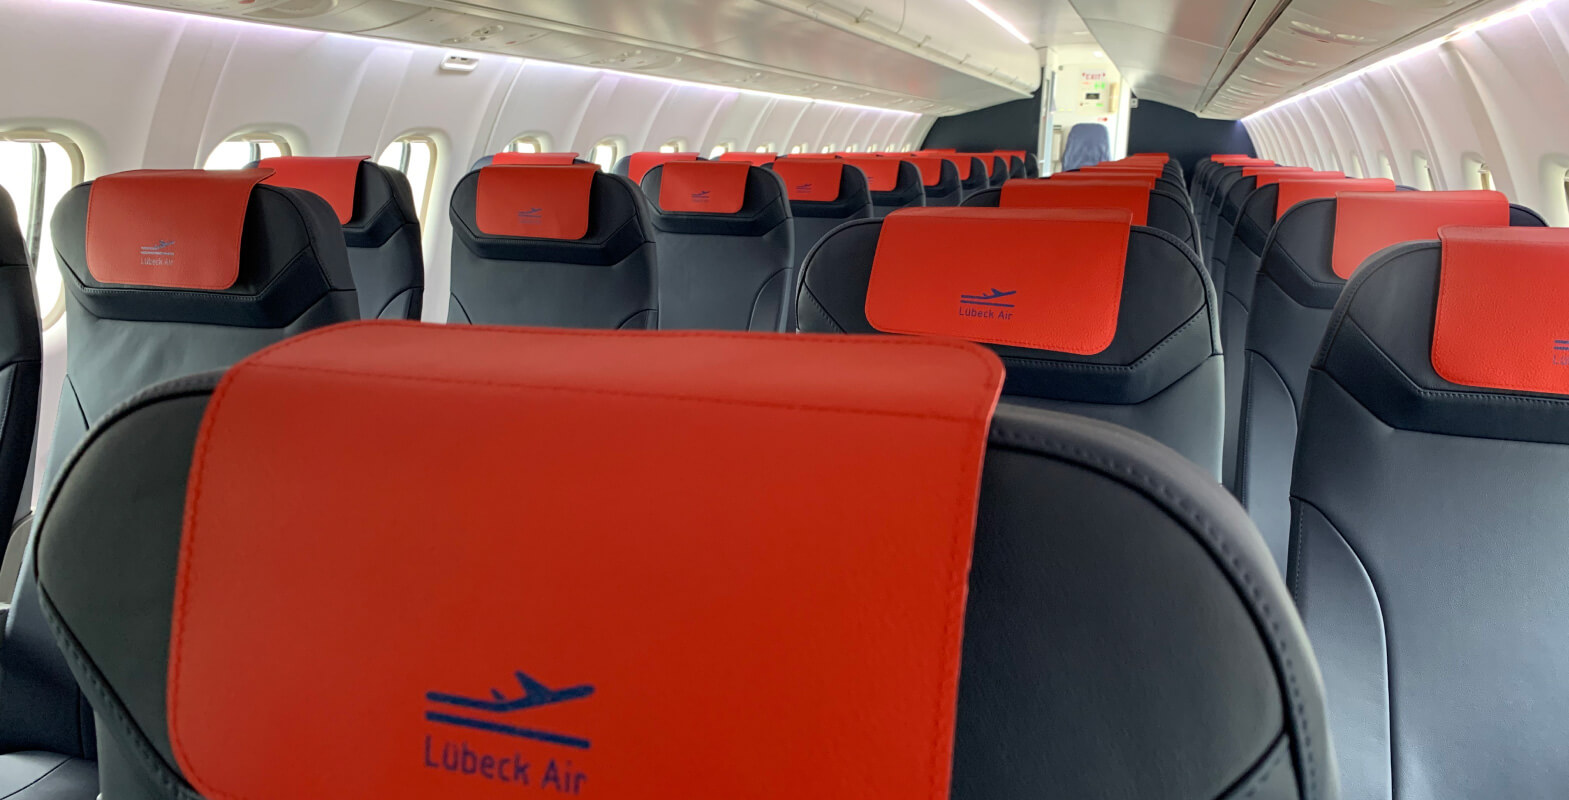 Bei Lübeck Air bequem auf Ledersitzen mit viel Beinfreiheit reisen